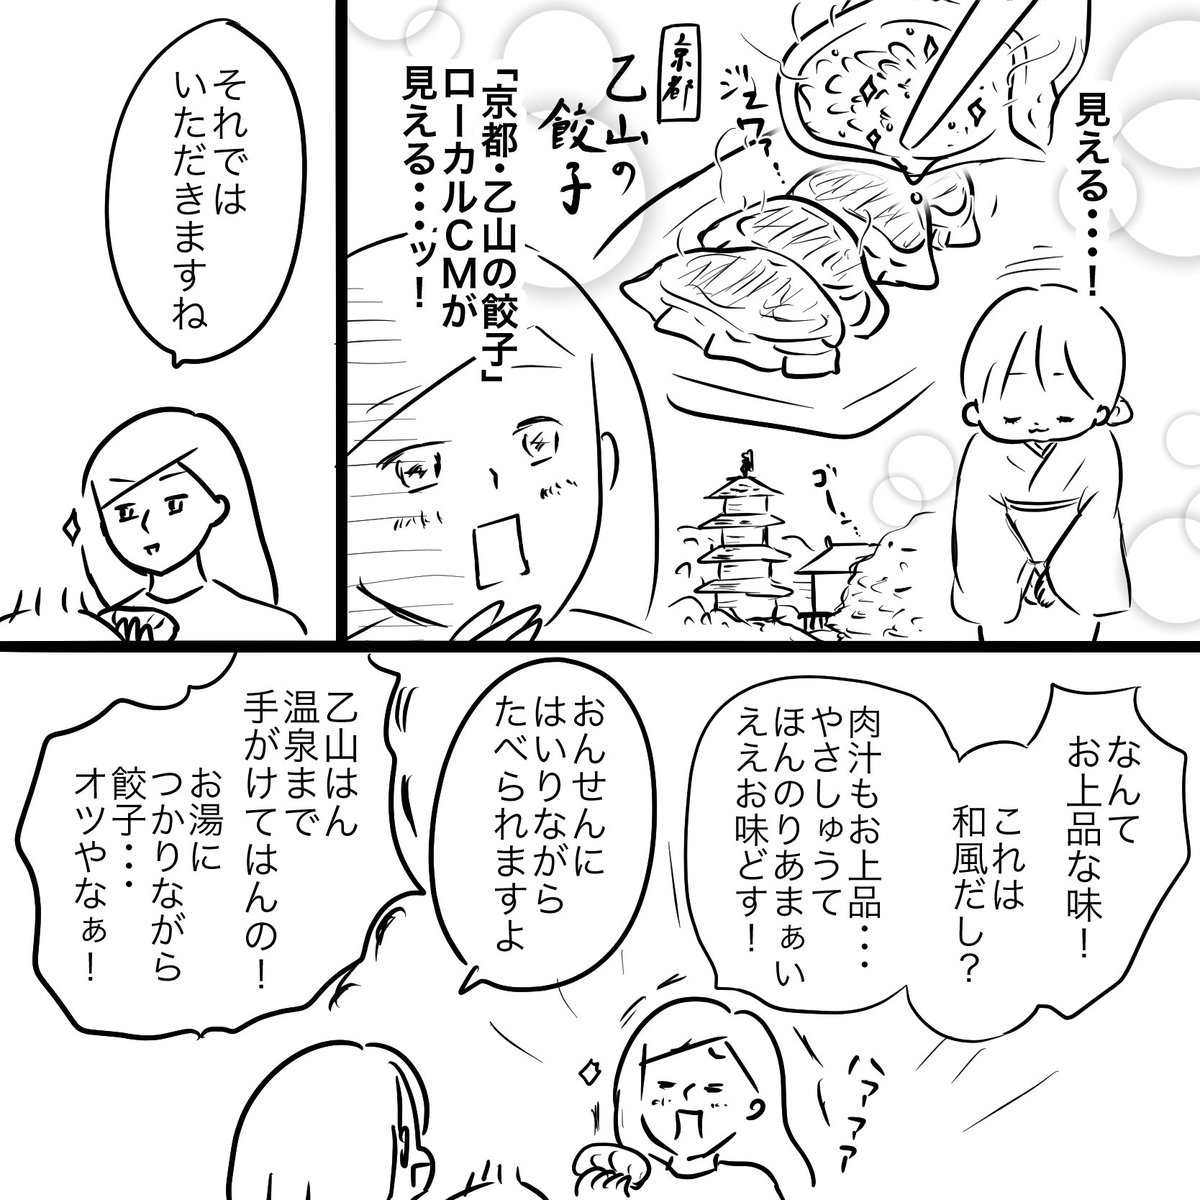 漫画はおとといの出来事。
昨日の晩ご飯は餃子でした。

#大阪王将冷凍餃子 